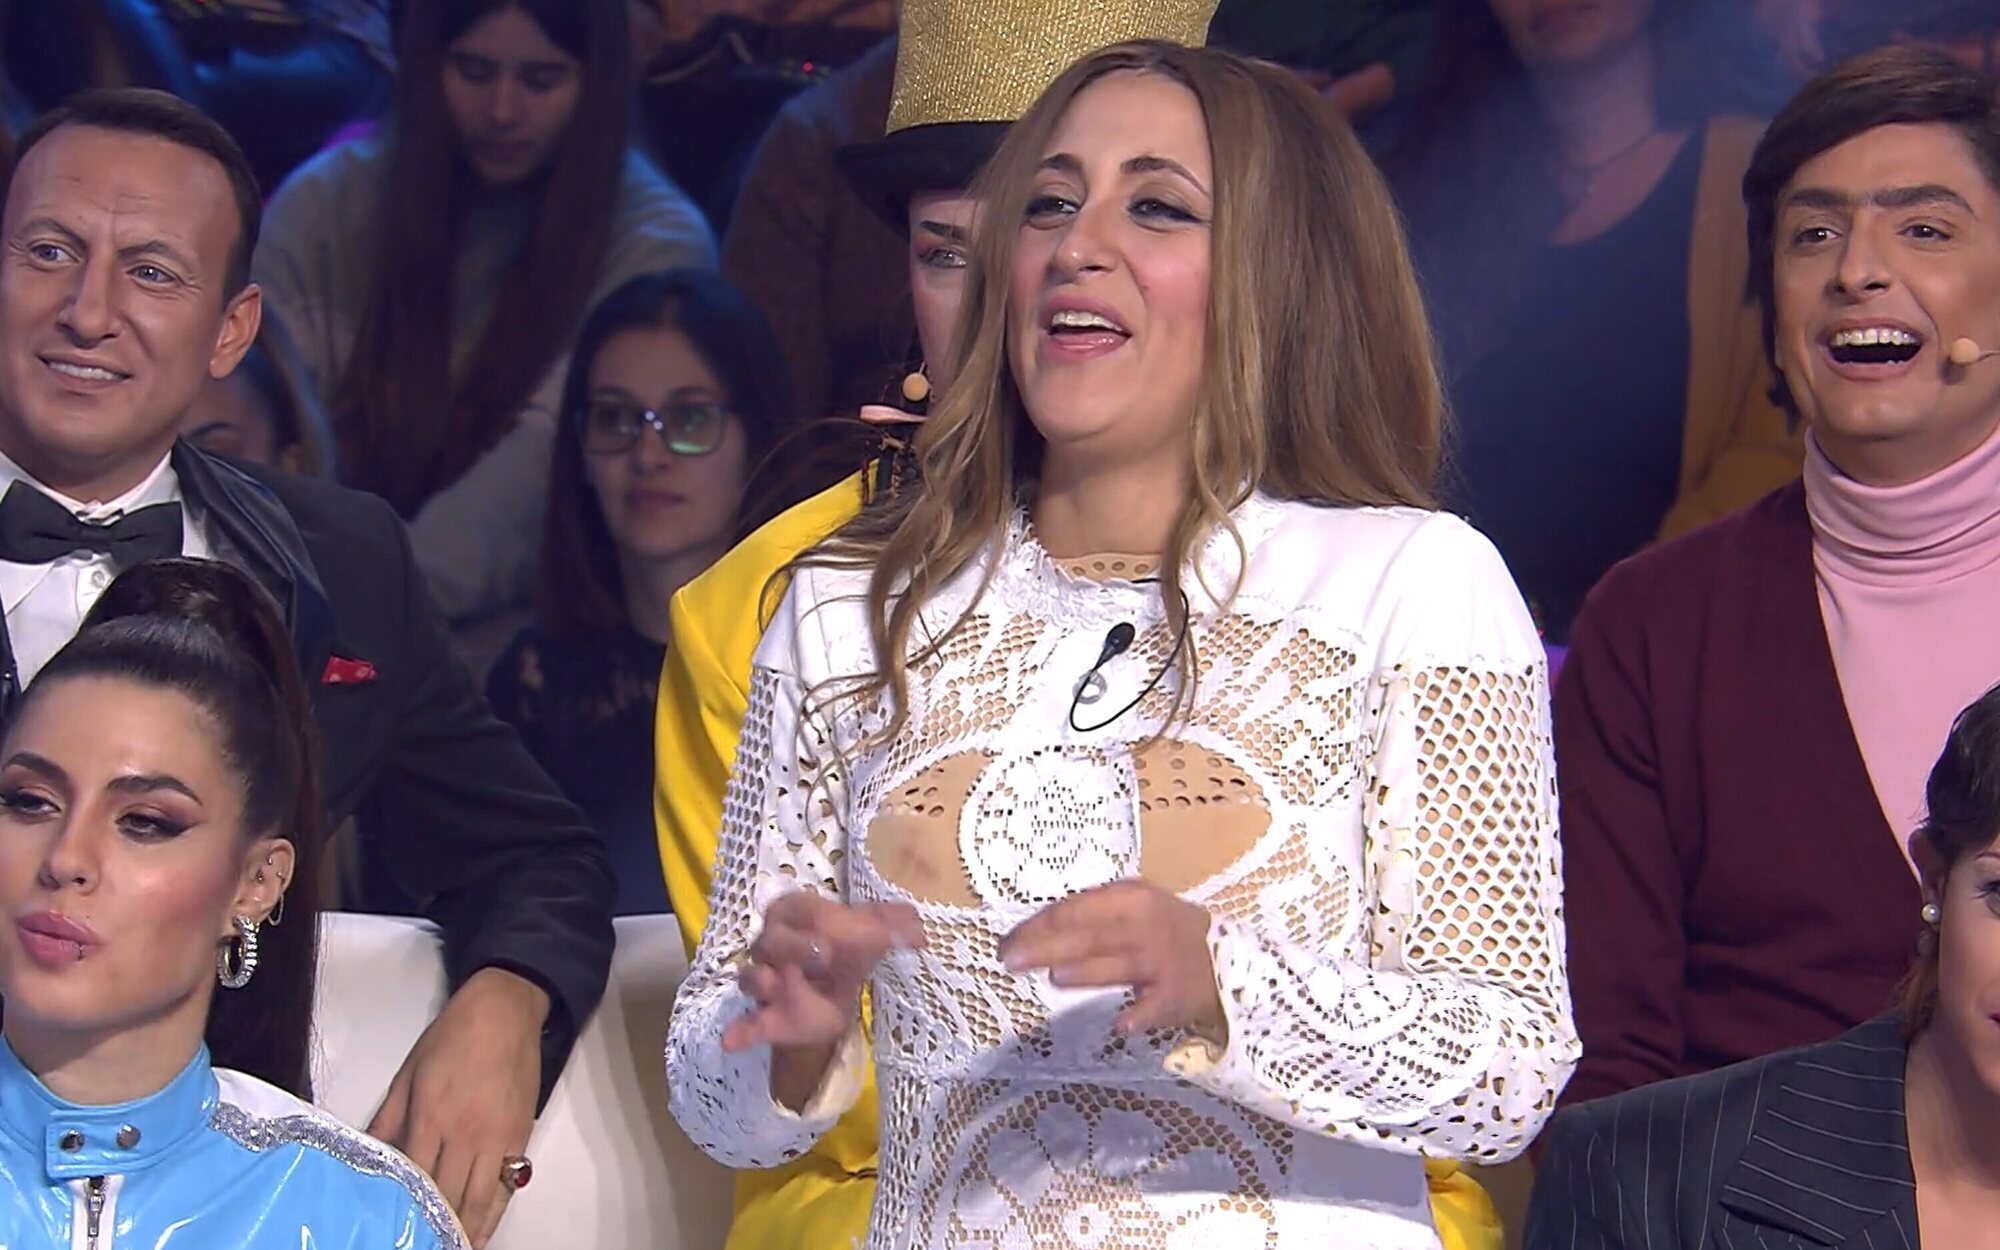 La pulla de Susi Caramelo en 'Tu cara me suena': "Aquí no voy a poder donar 3.000 euros nunca"